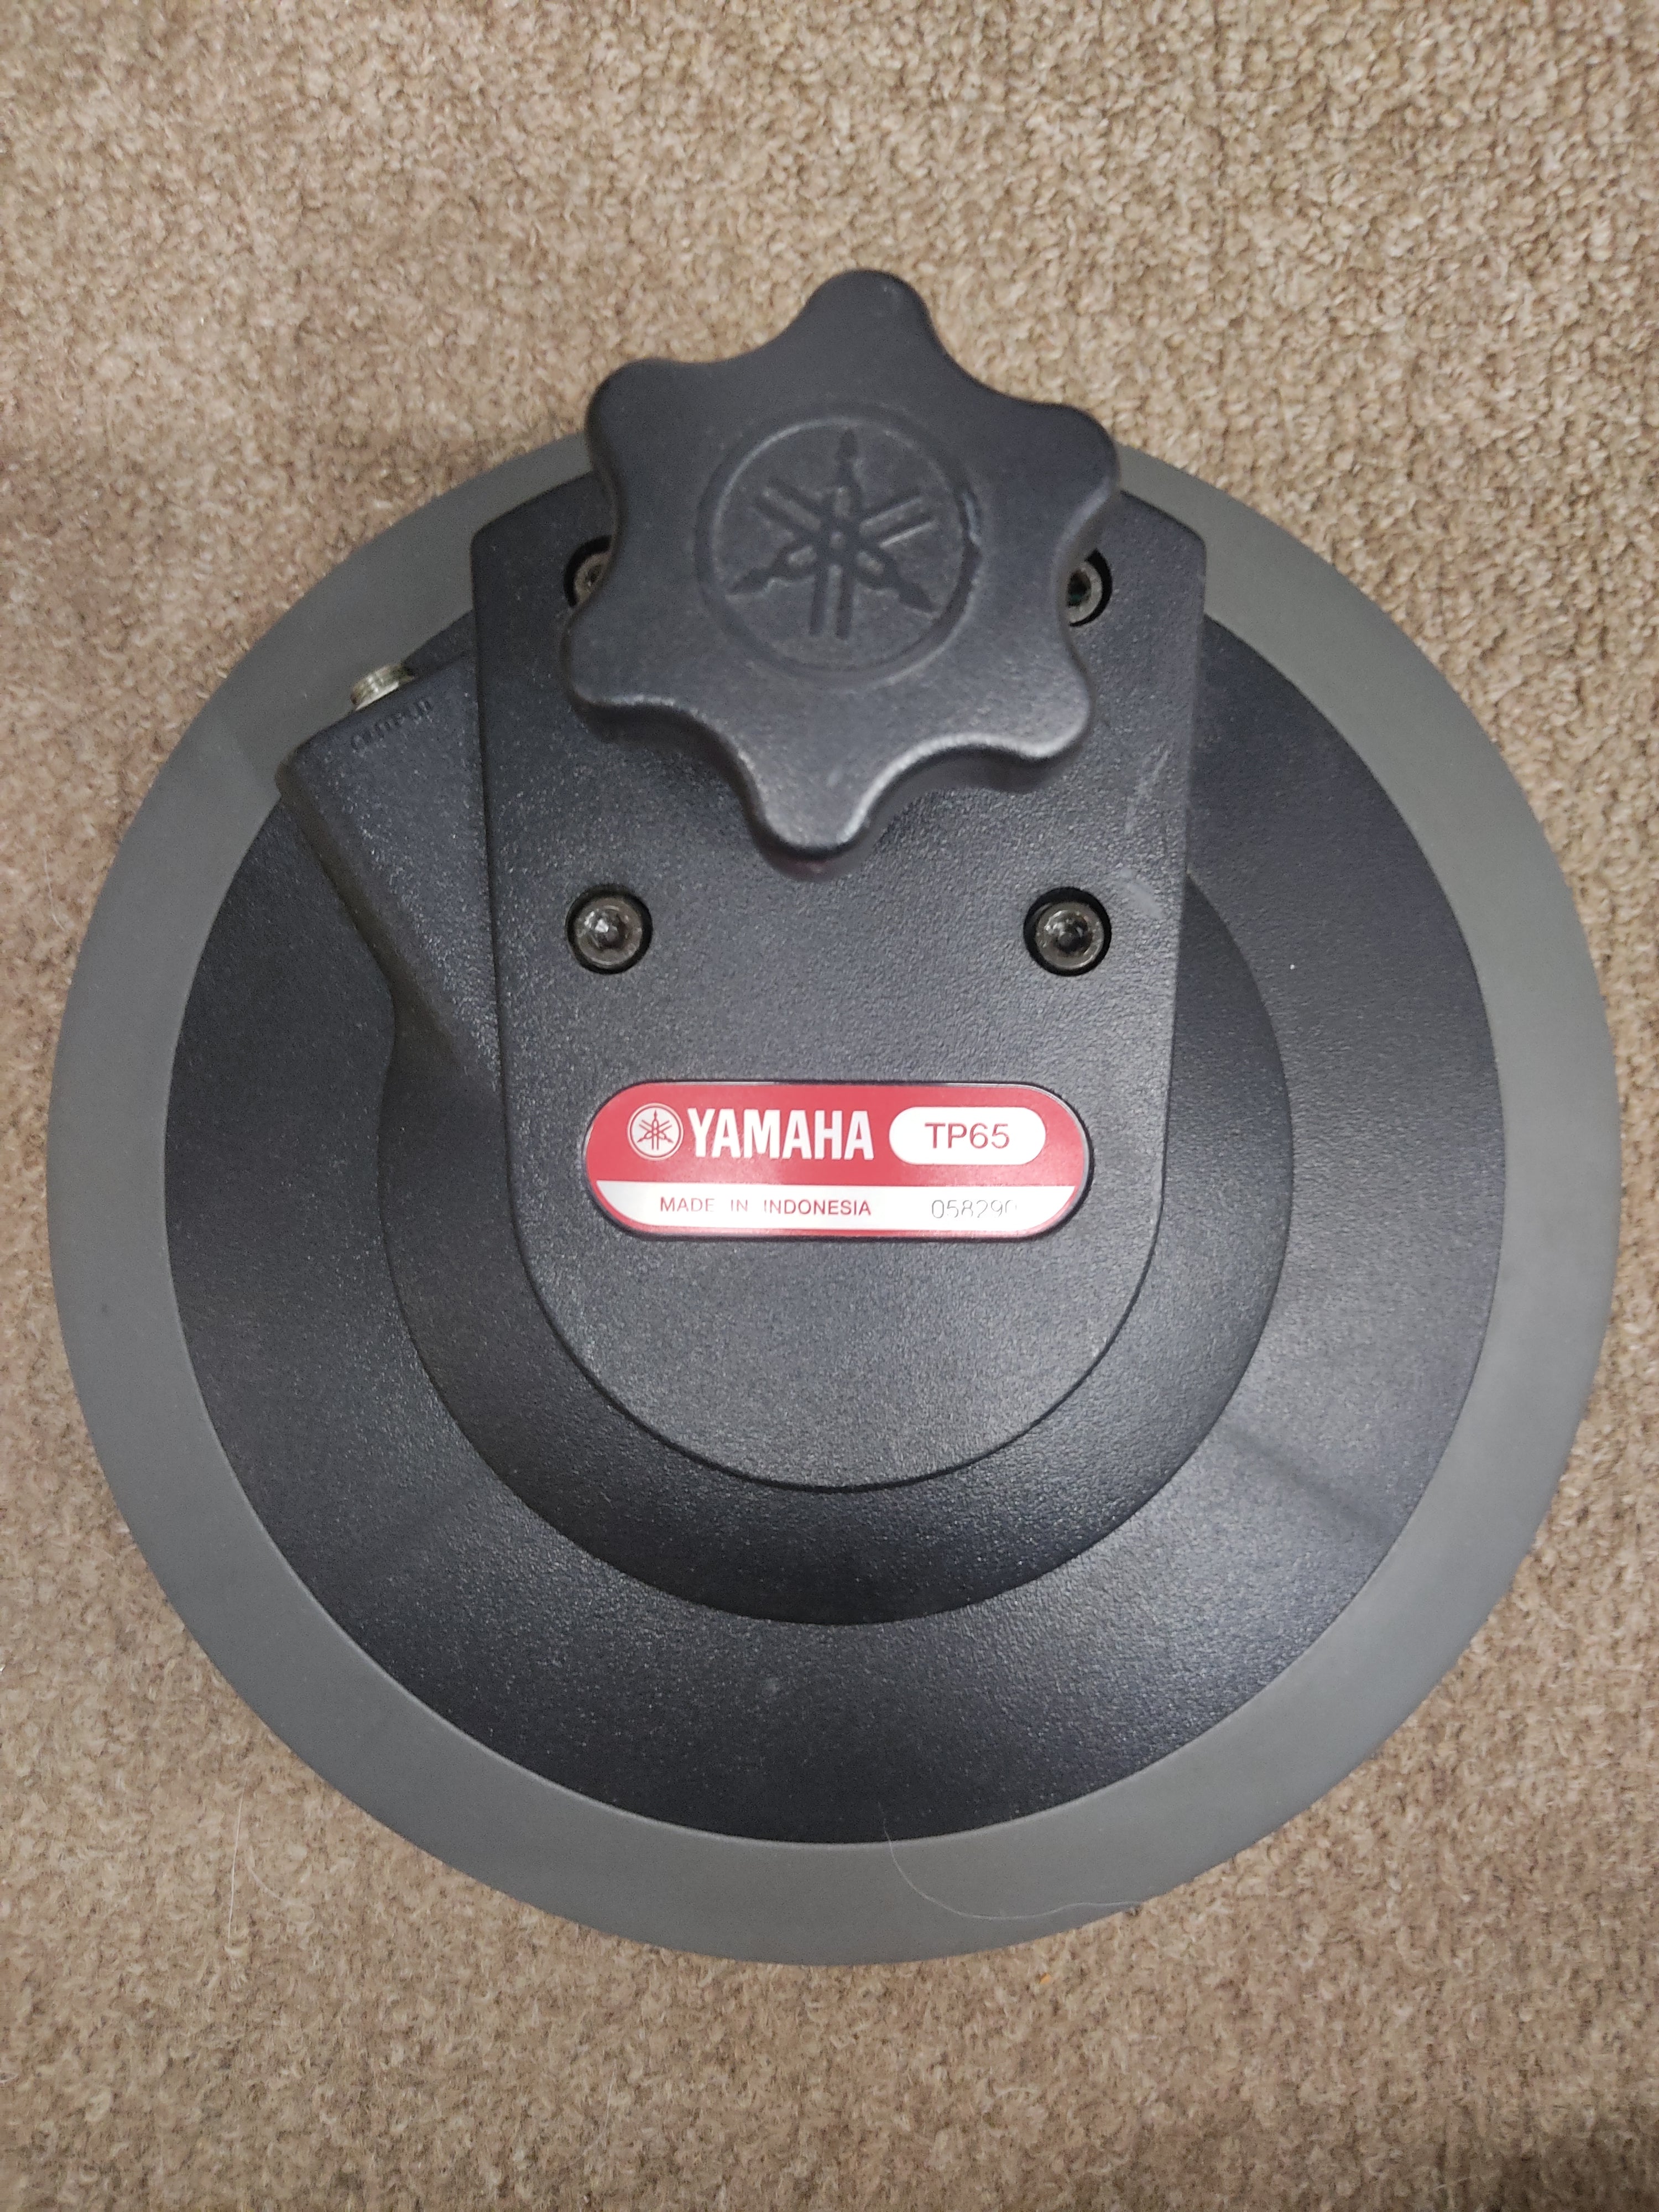 Yamaha TP65